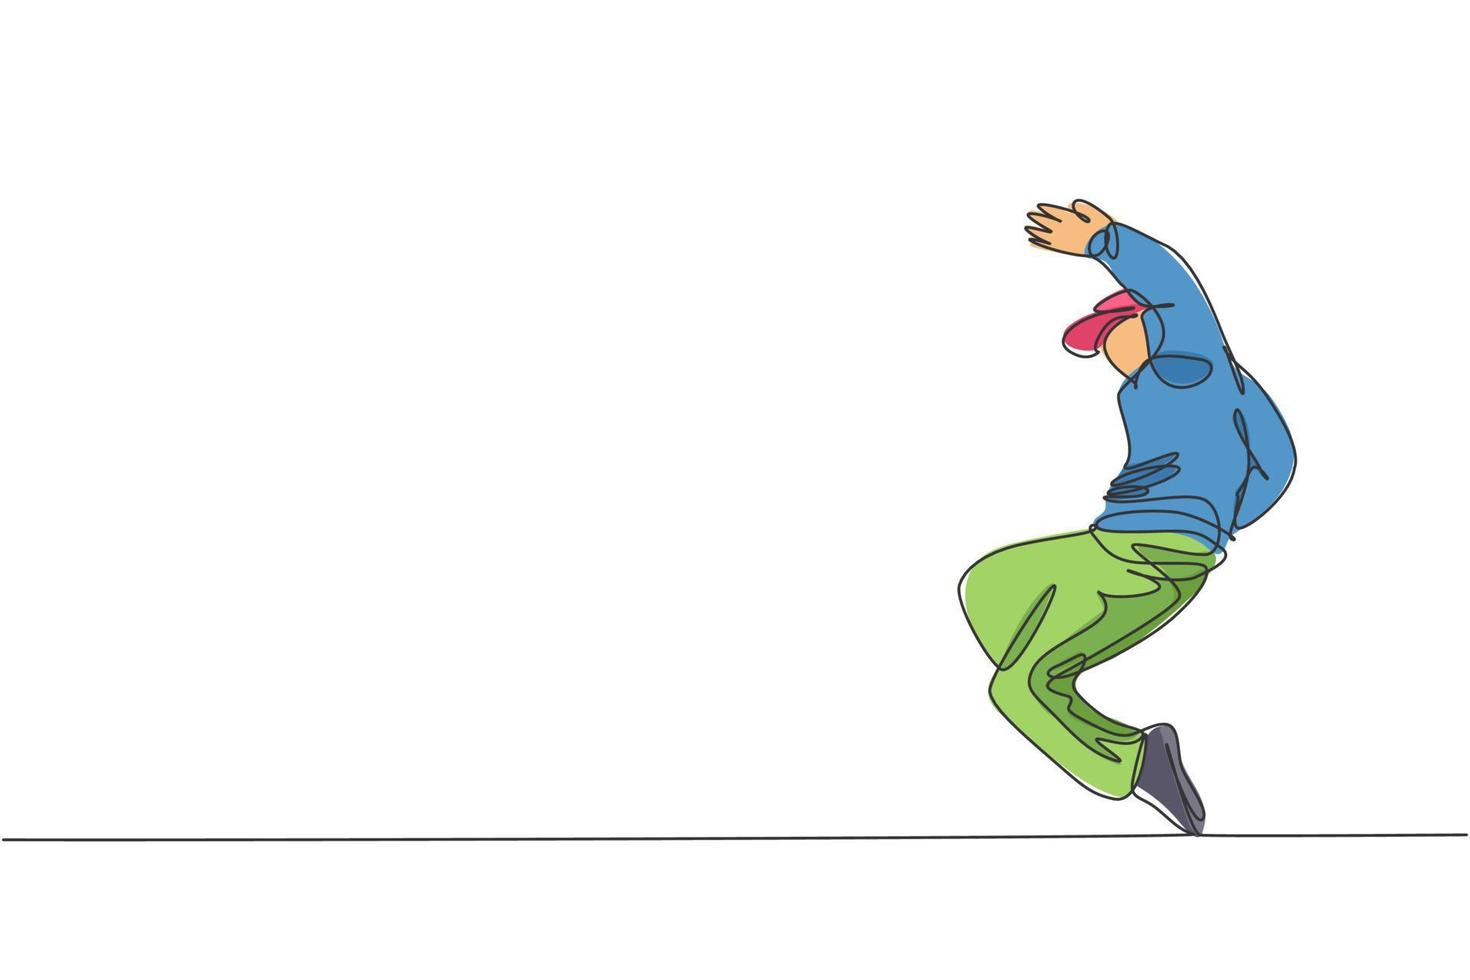 enkele doorlopende lijntekening van jonge energieke hiphopdanser man op hoodie oefenen breakdance in straat. stedelijke generatie levensstijl concept. trendy één lijn tekenen ontwerp vectorillustratie vector